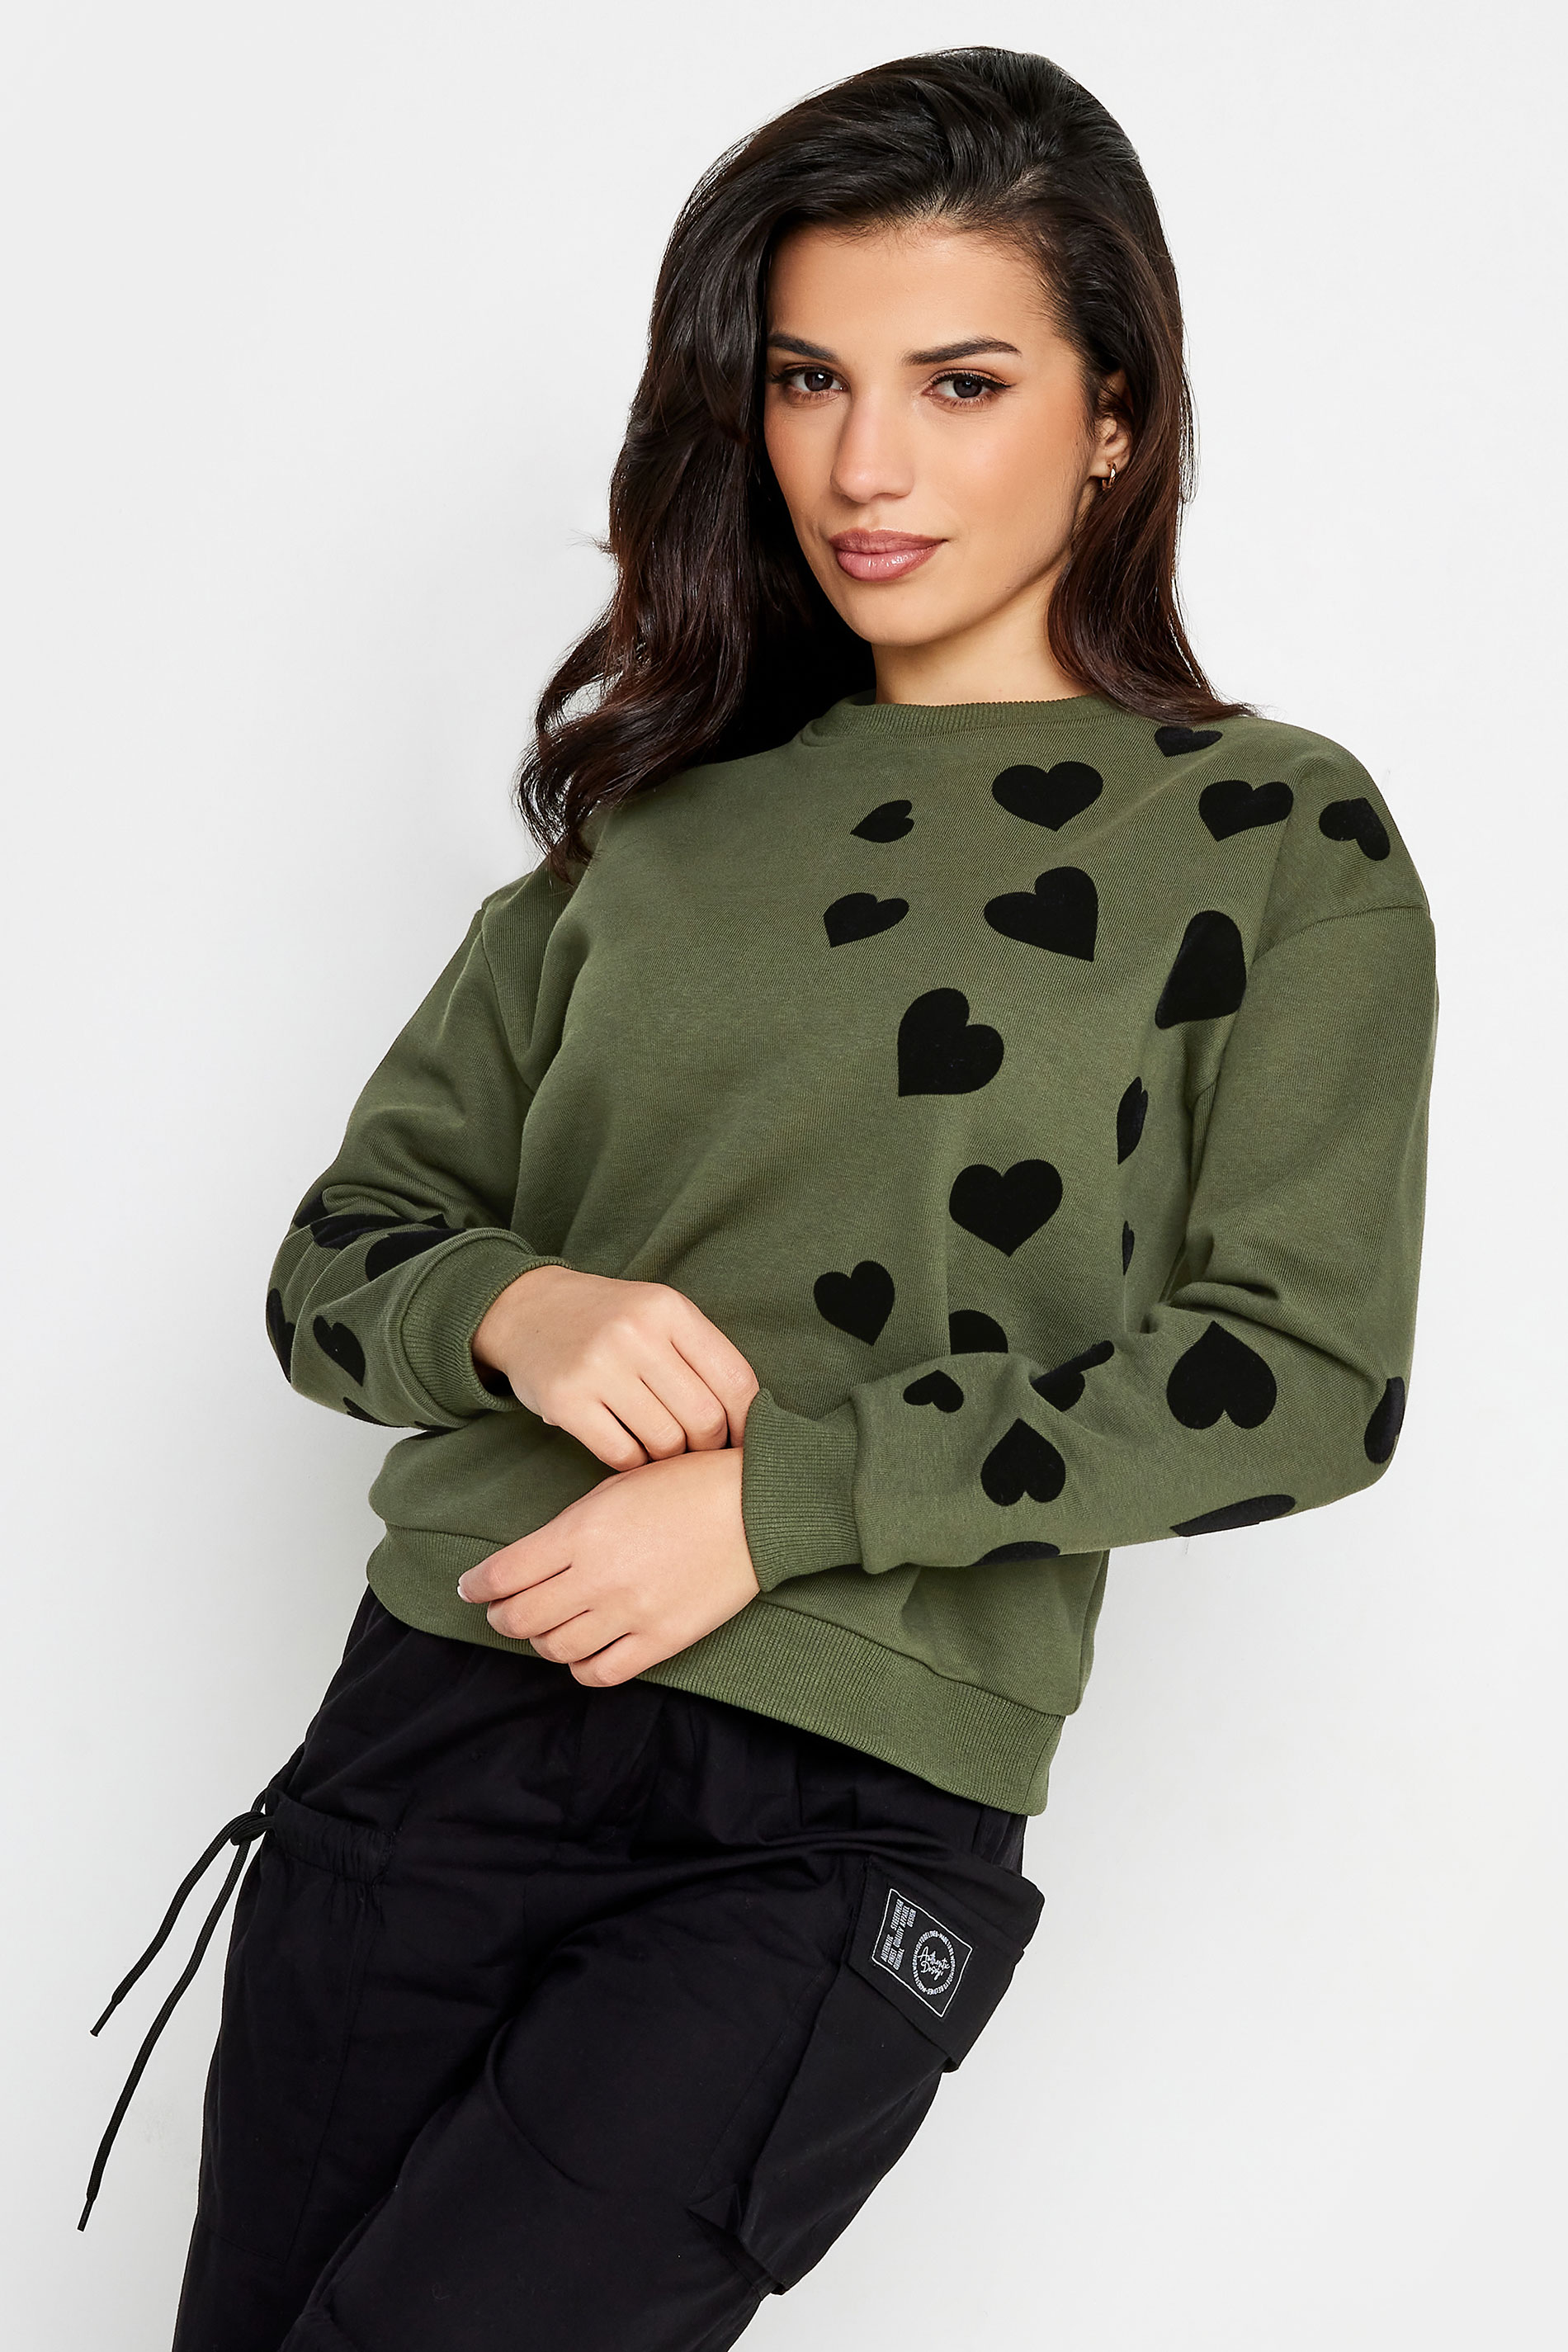 PixieGirl Khaki Green Heart Print Sweatshirt | PixieGirl  1